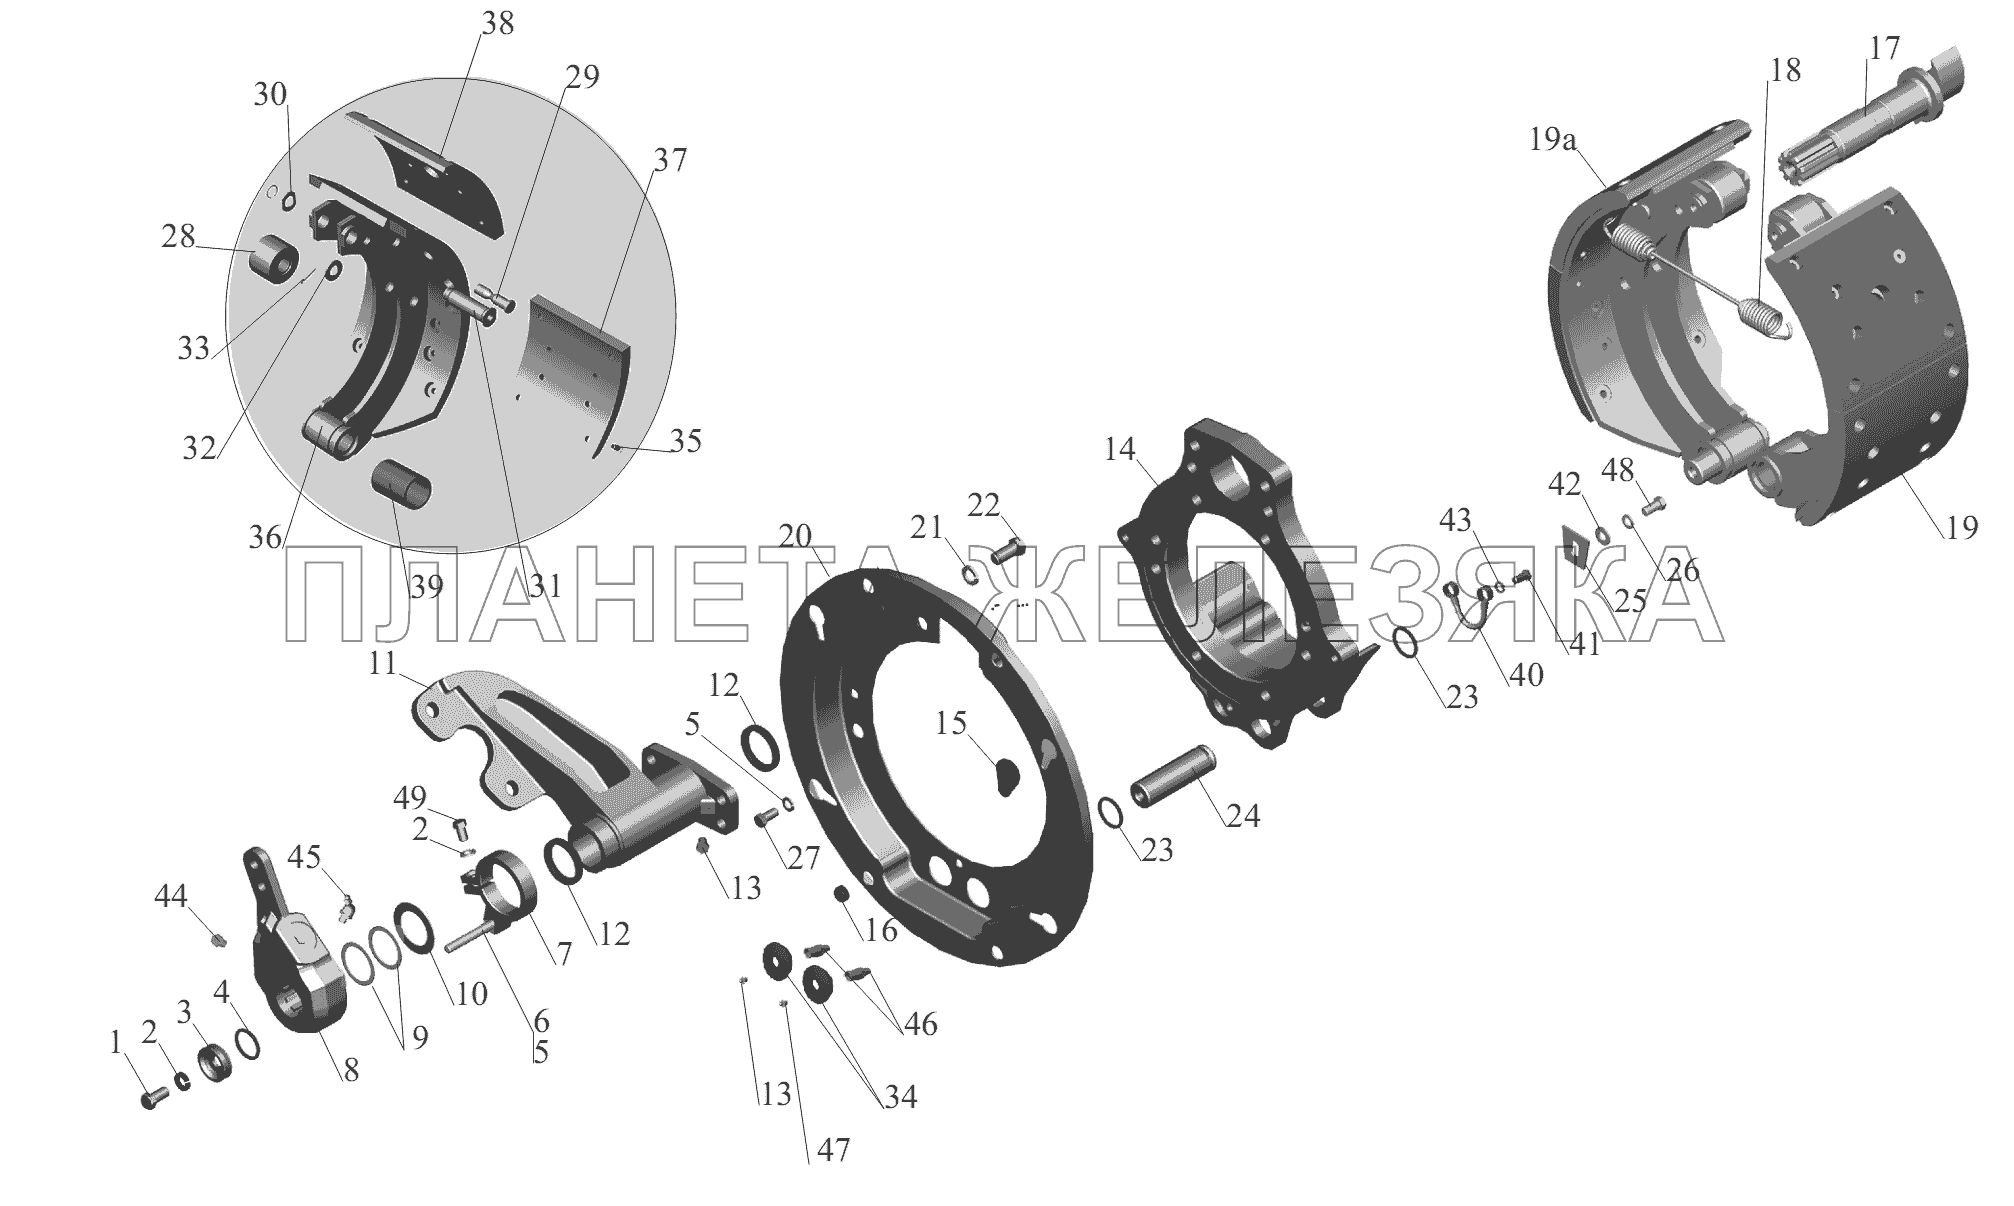 Тормозной механизм передних колес 152-3501004 (152-3501005) МАЗ-6430A8 (5440A8, 5440A5)